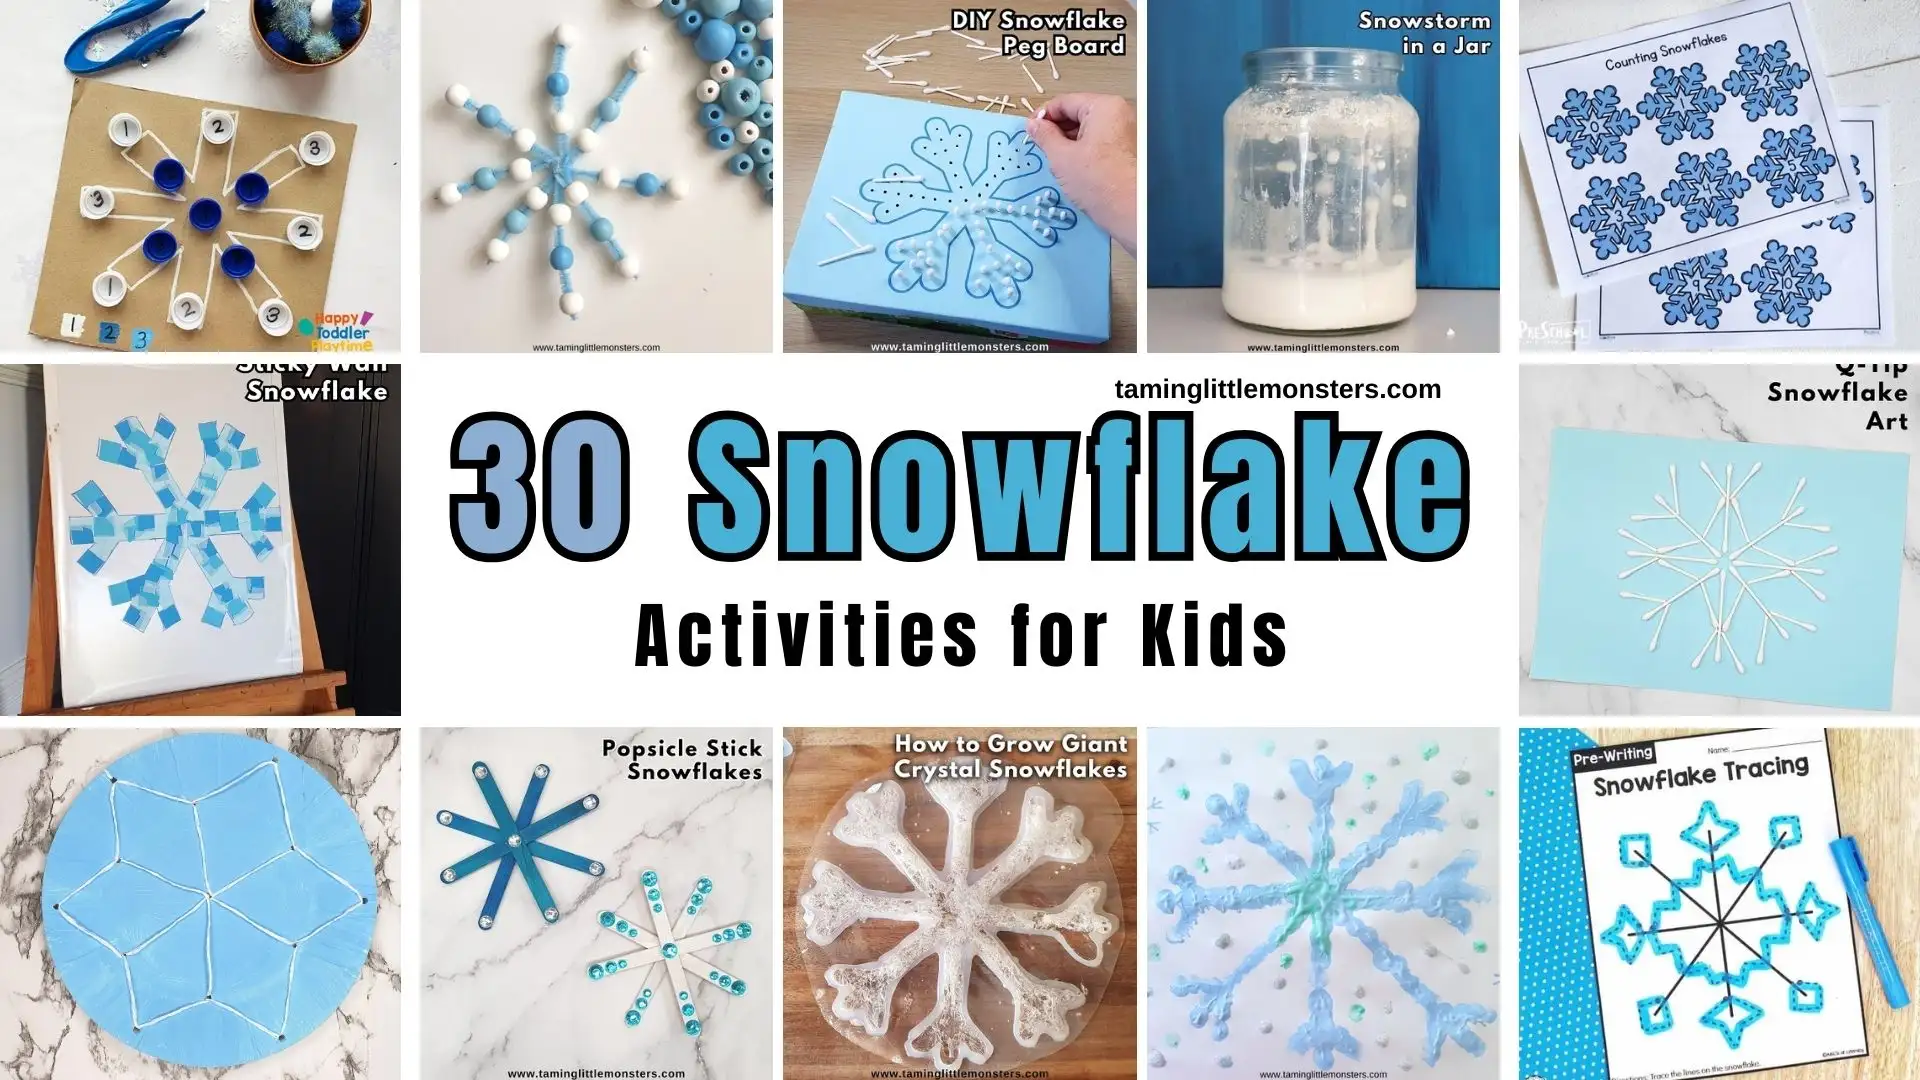 6 DIY Snowflake Crafts for Toddlers, Preschoolers & Kids